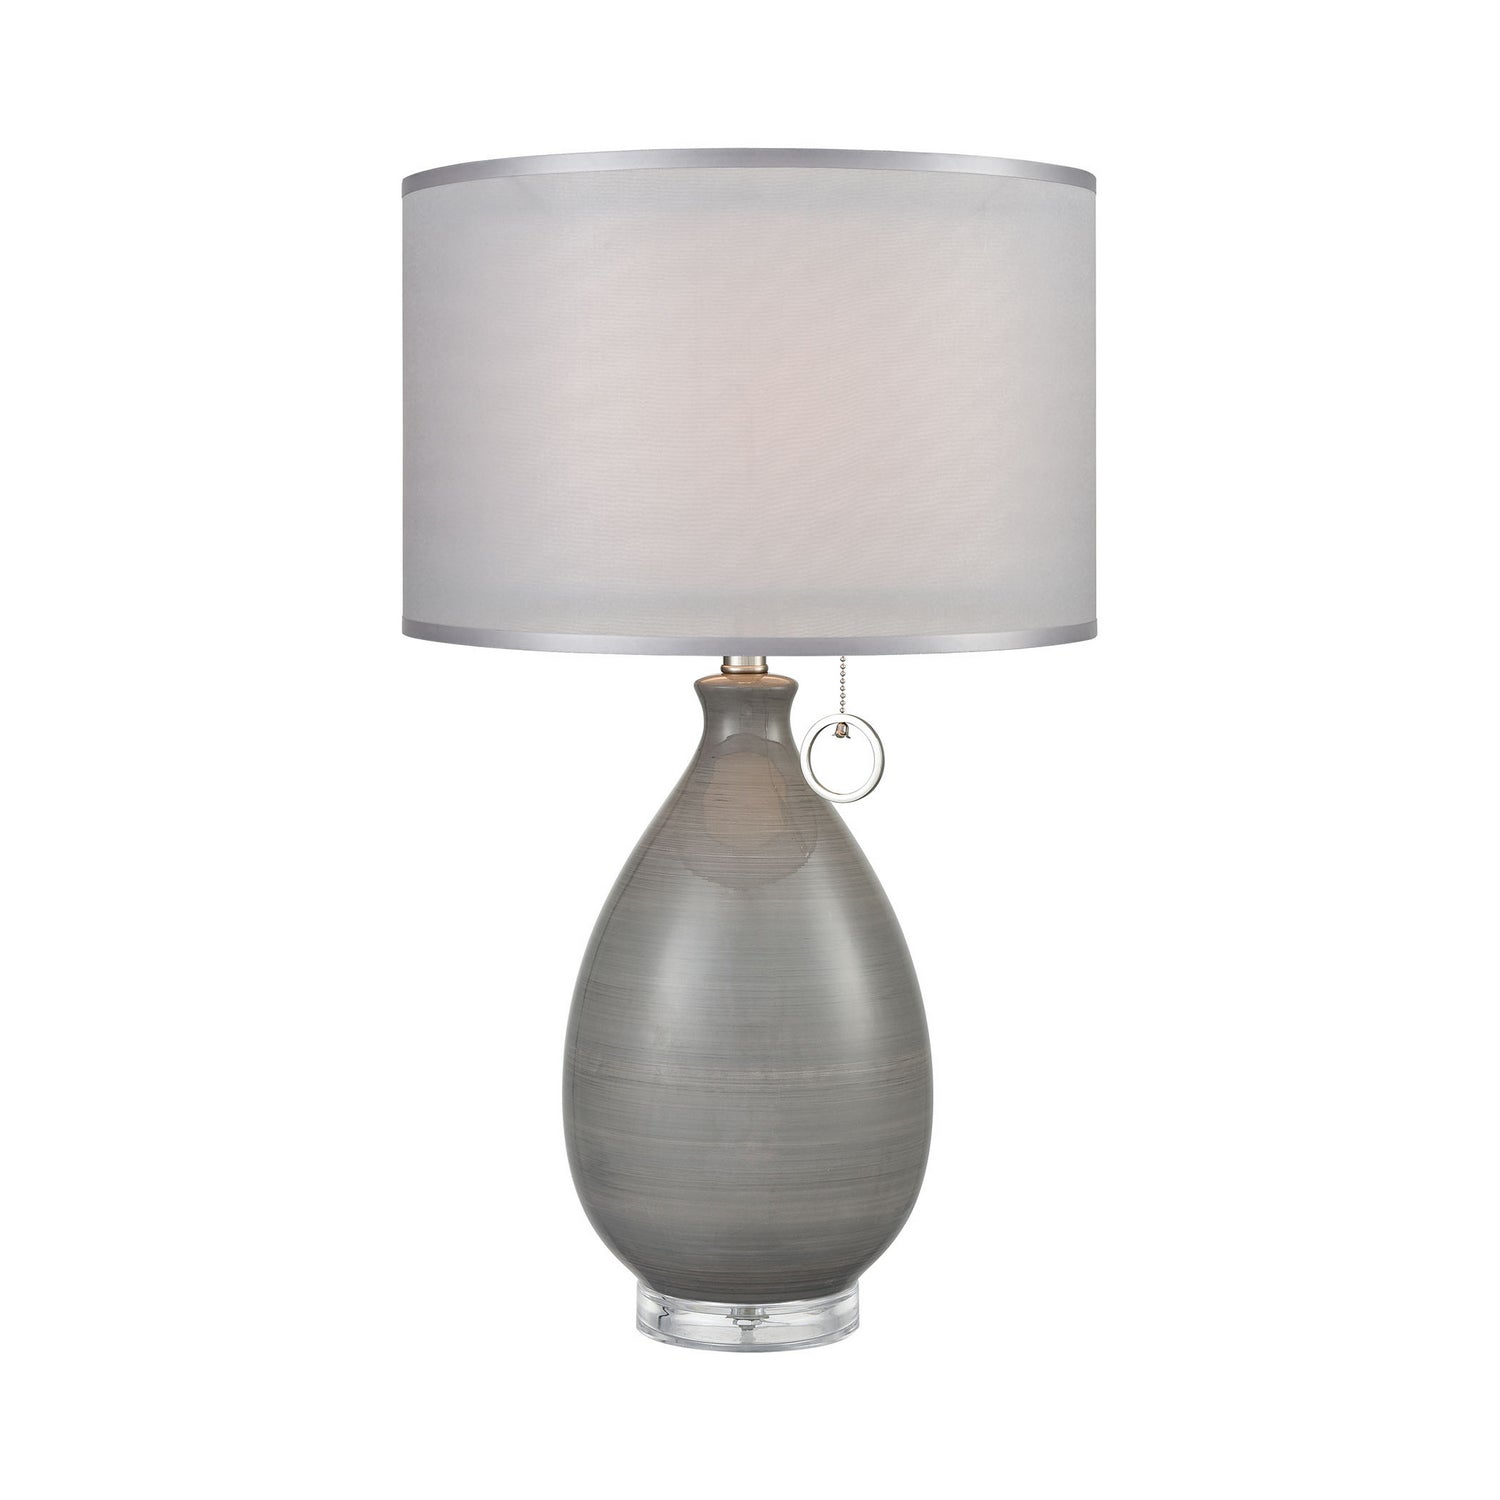 ELK Home - D3792 - One Light Table Lamp - Clothilde - Gray